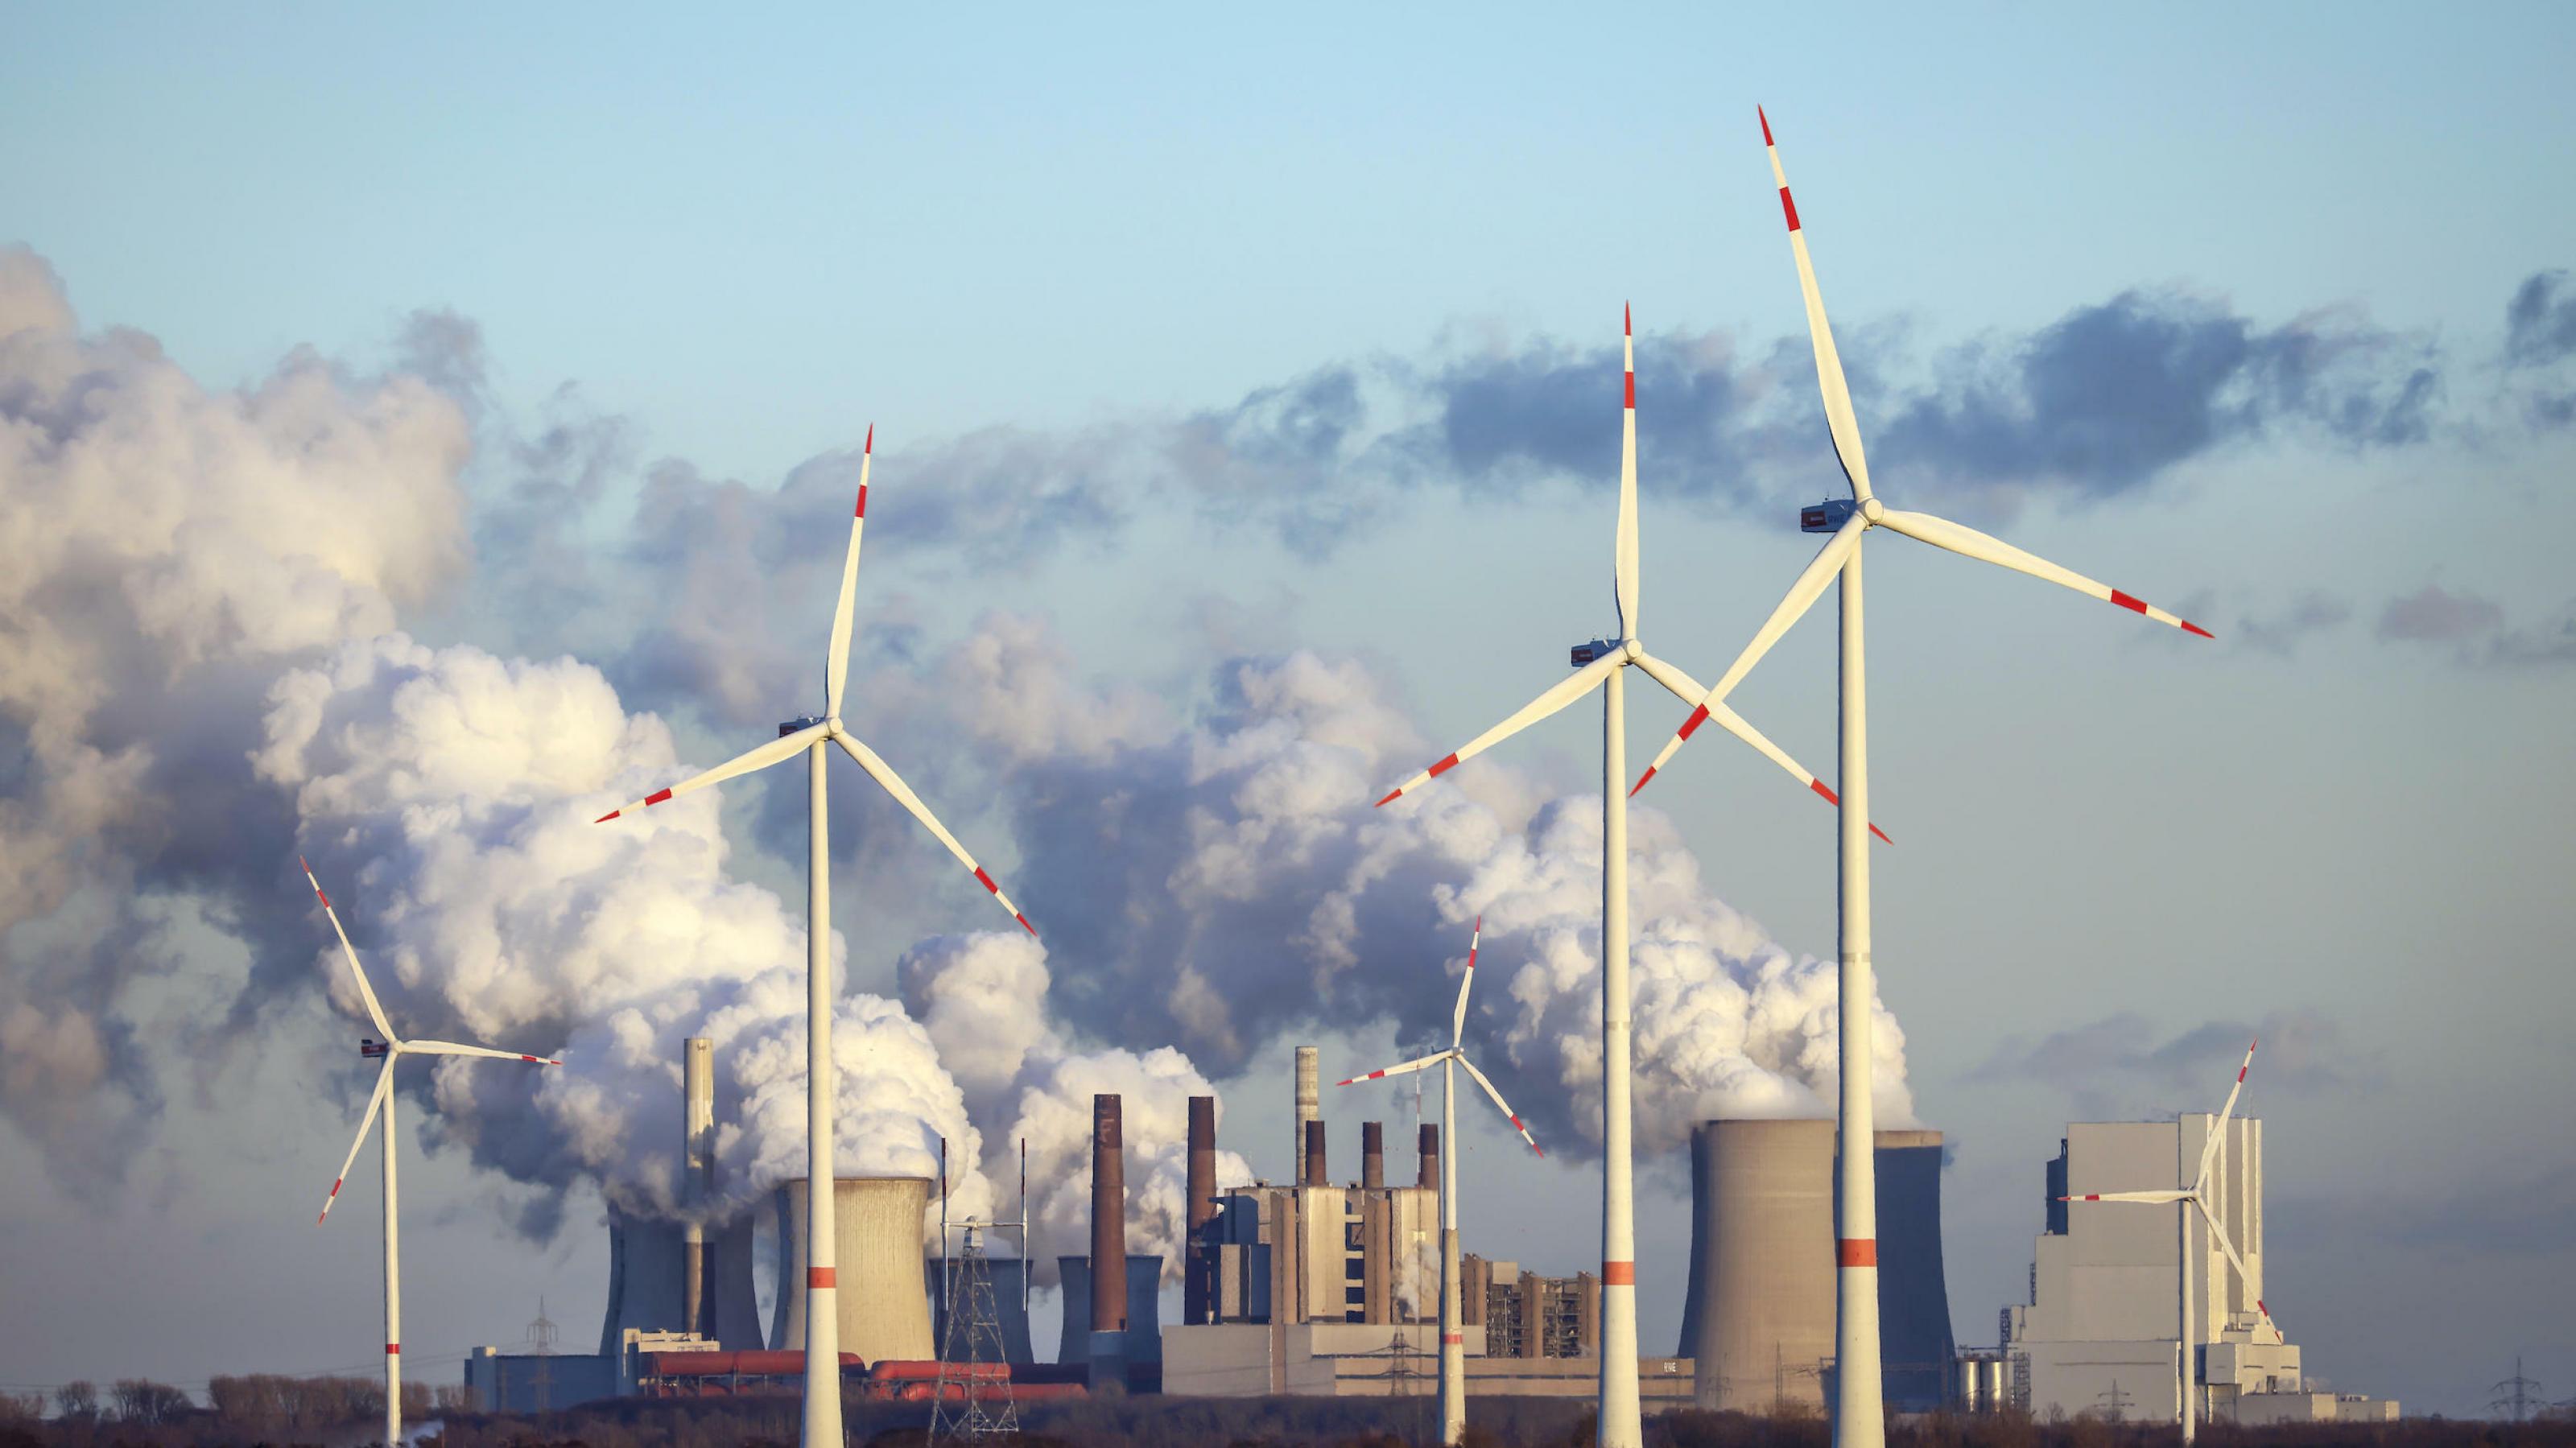 Die Kosten für Windkraft sind seit 2010 weltweit um bis zu 85 Prozent gesunken, stellt der Weltklimabericht 2022 des IPCC fest. Hier Windräder im Windpark vor dem RWE-Kohlekraftwerk Neurath am Kohle-Tagebau Garzweiler.